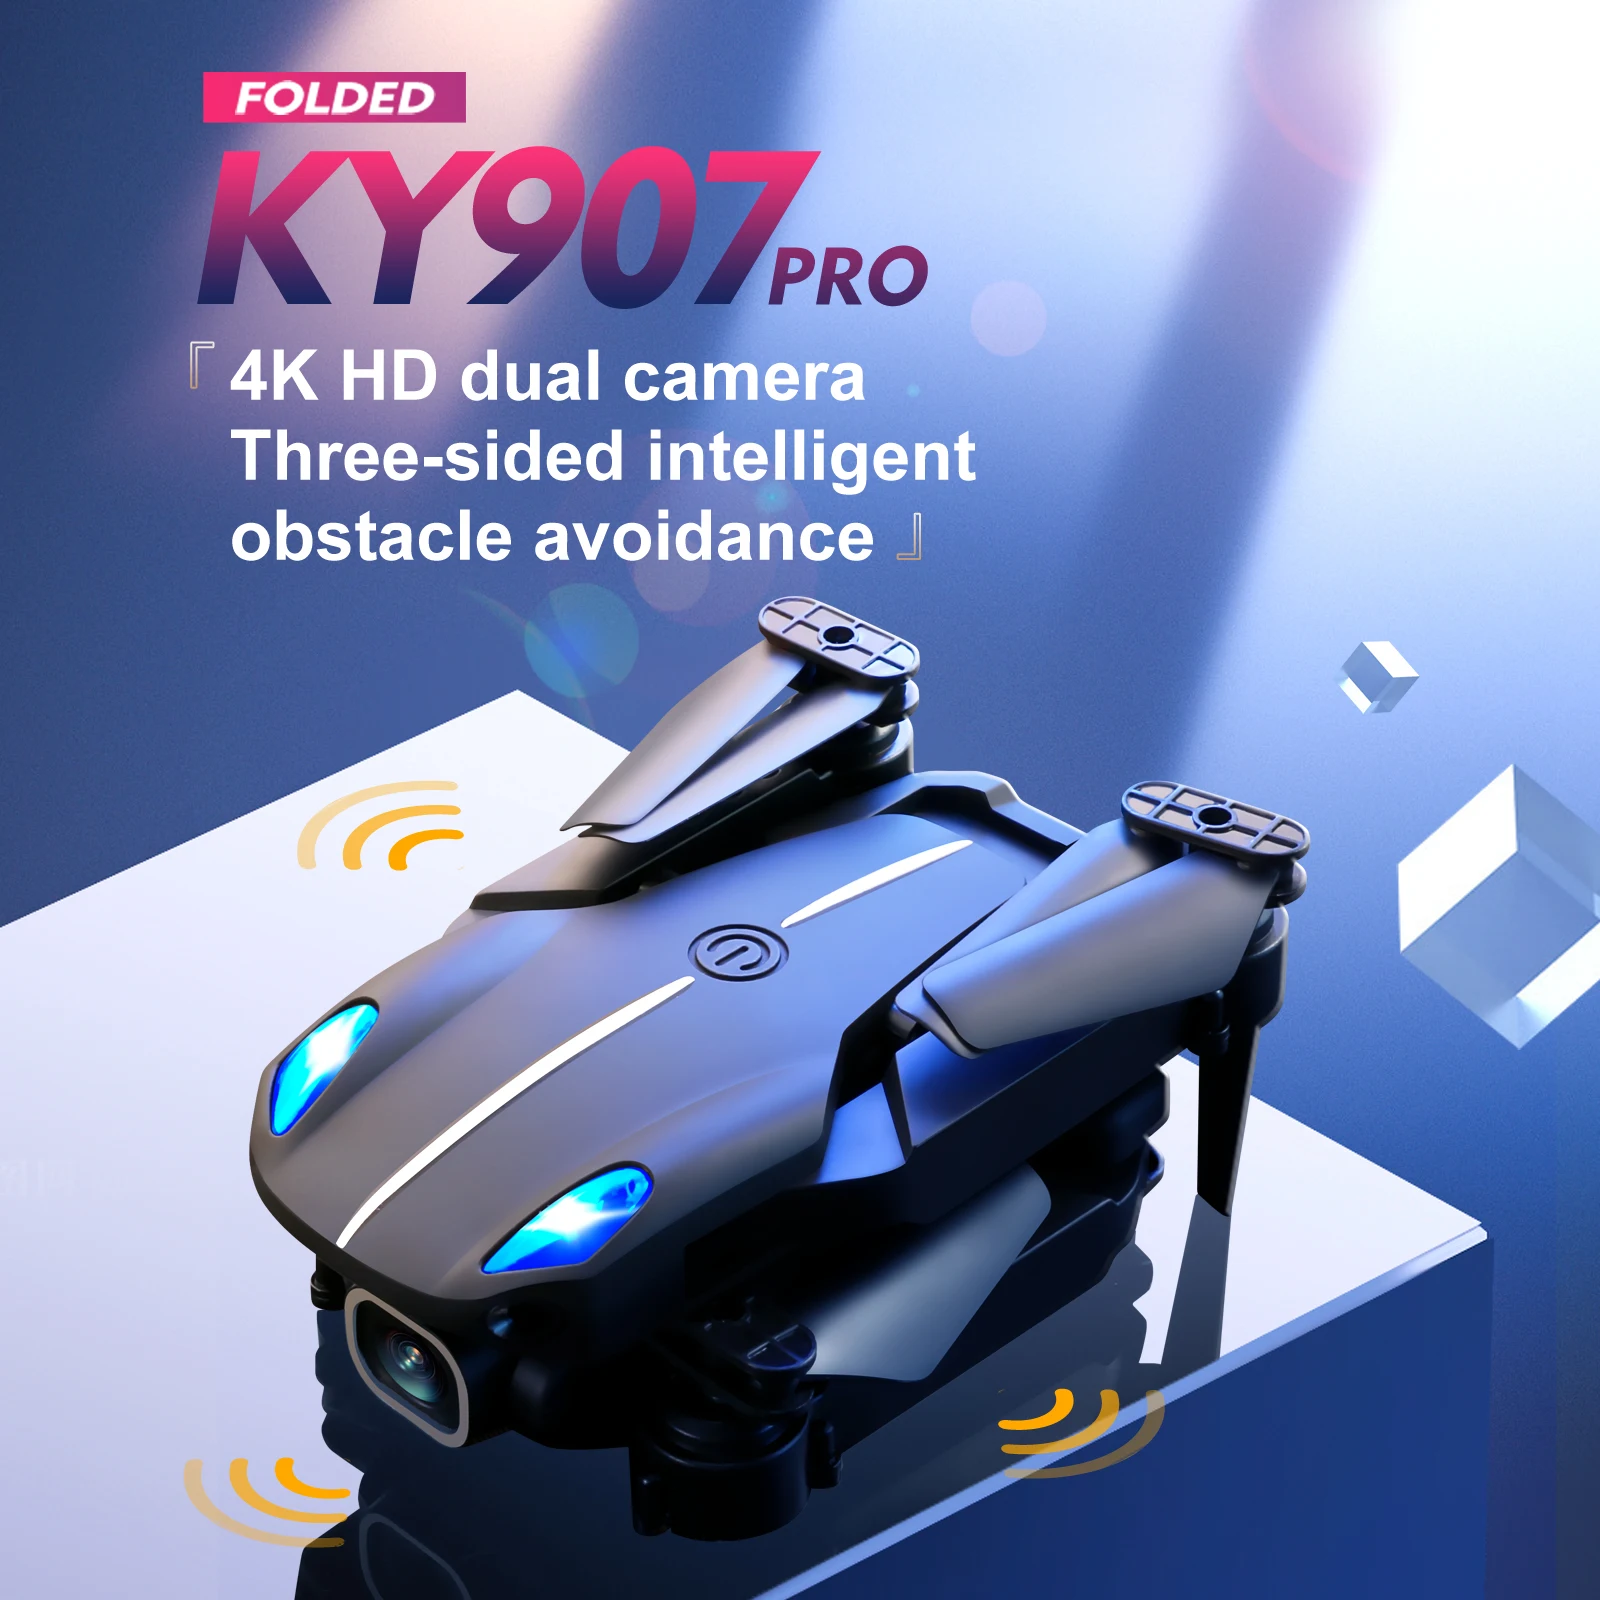 KY907 PRO Drone, ky9op pro 4k hd dual camera intelligent